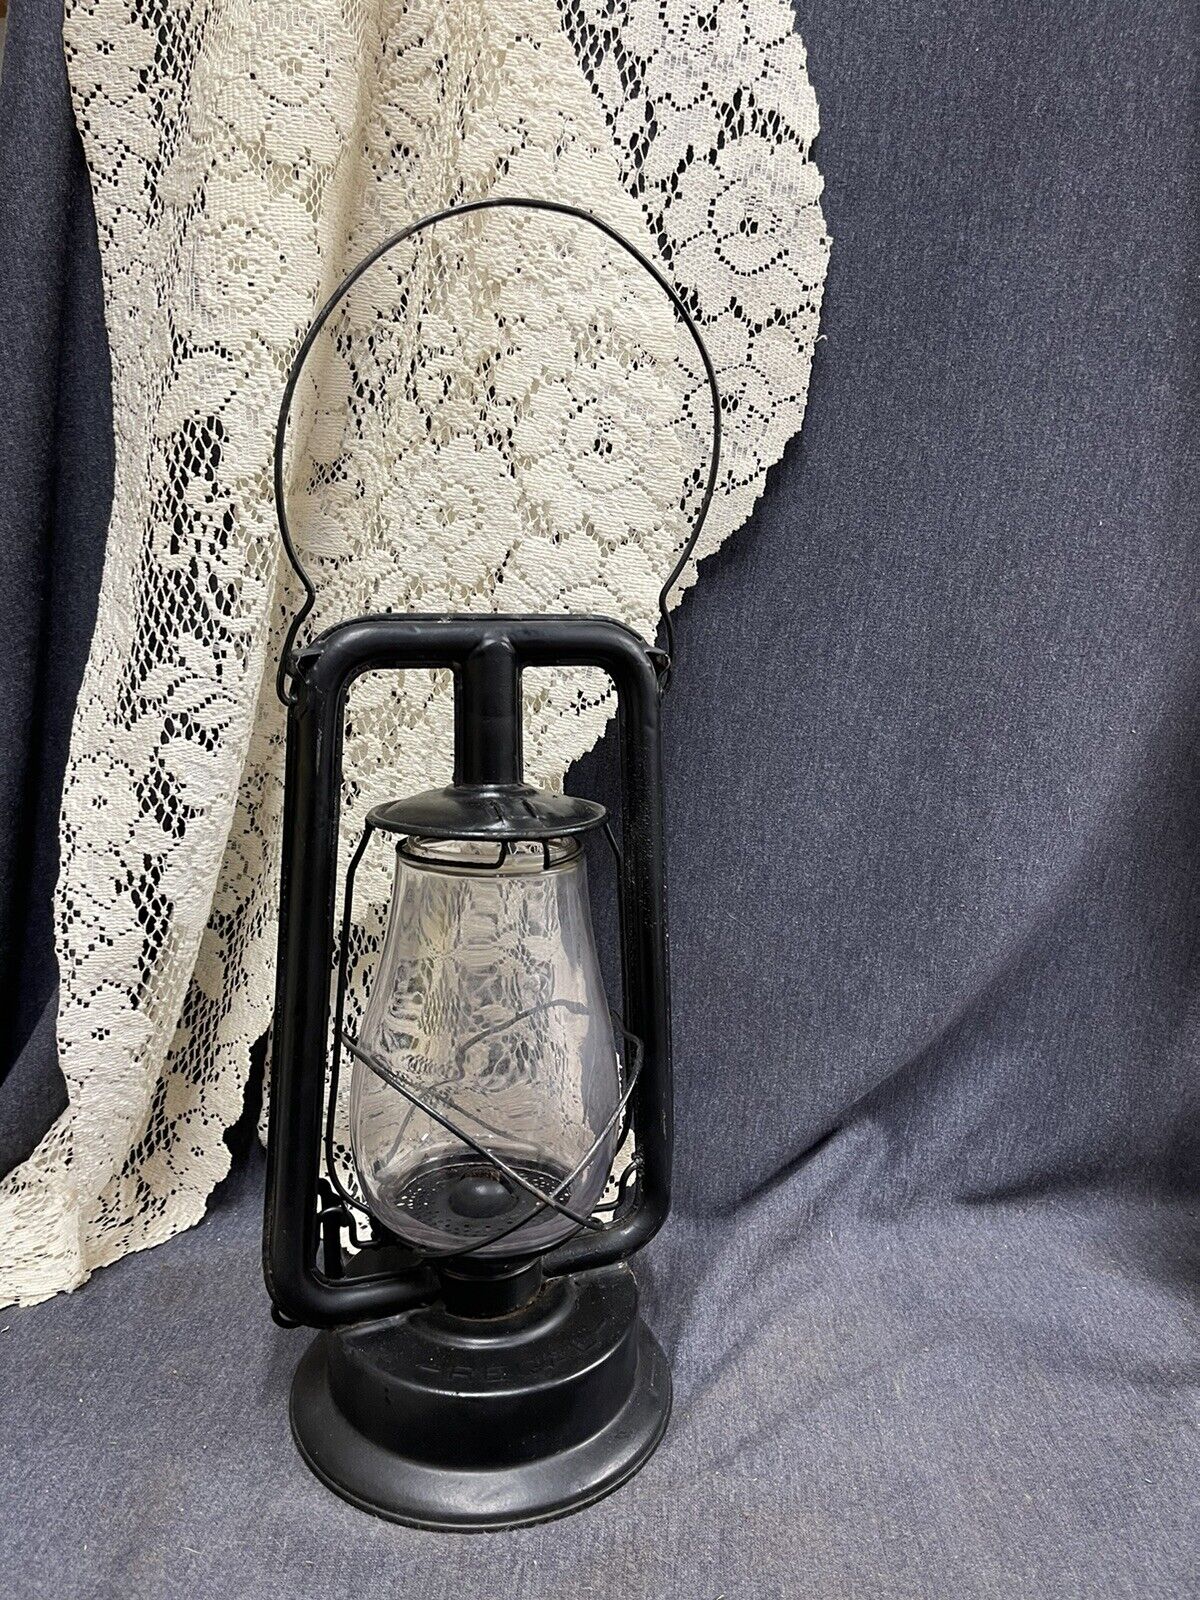 Antique Regal Oil Lantern No. 0 Coal Mine Railroad Lantern Patient 1903